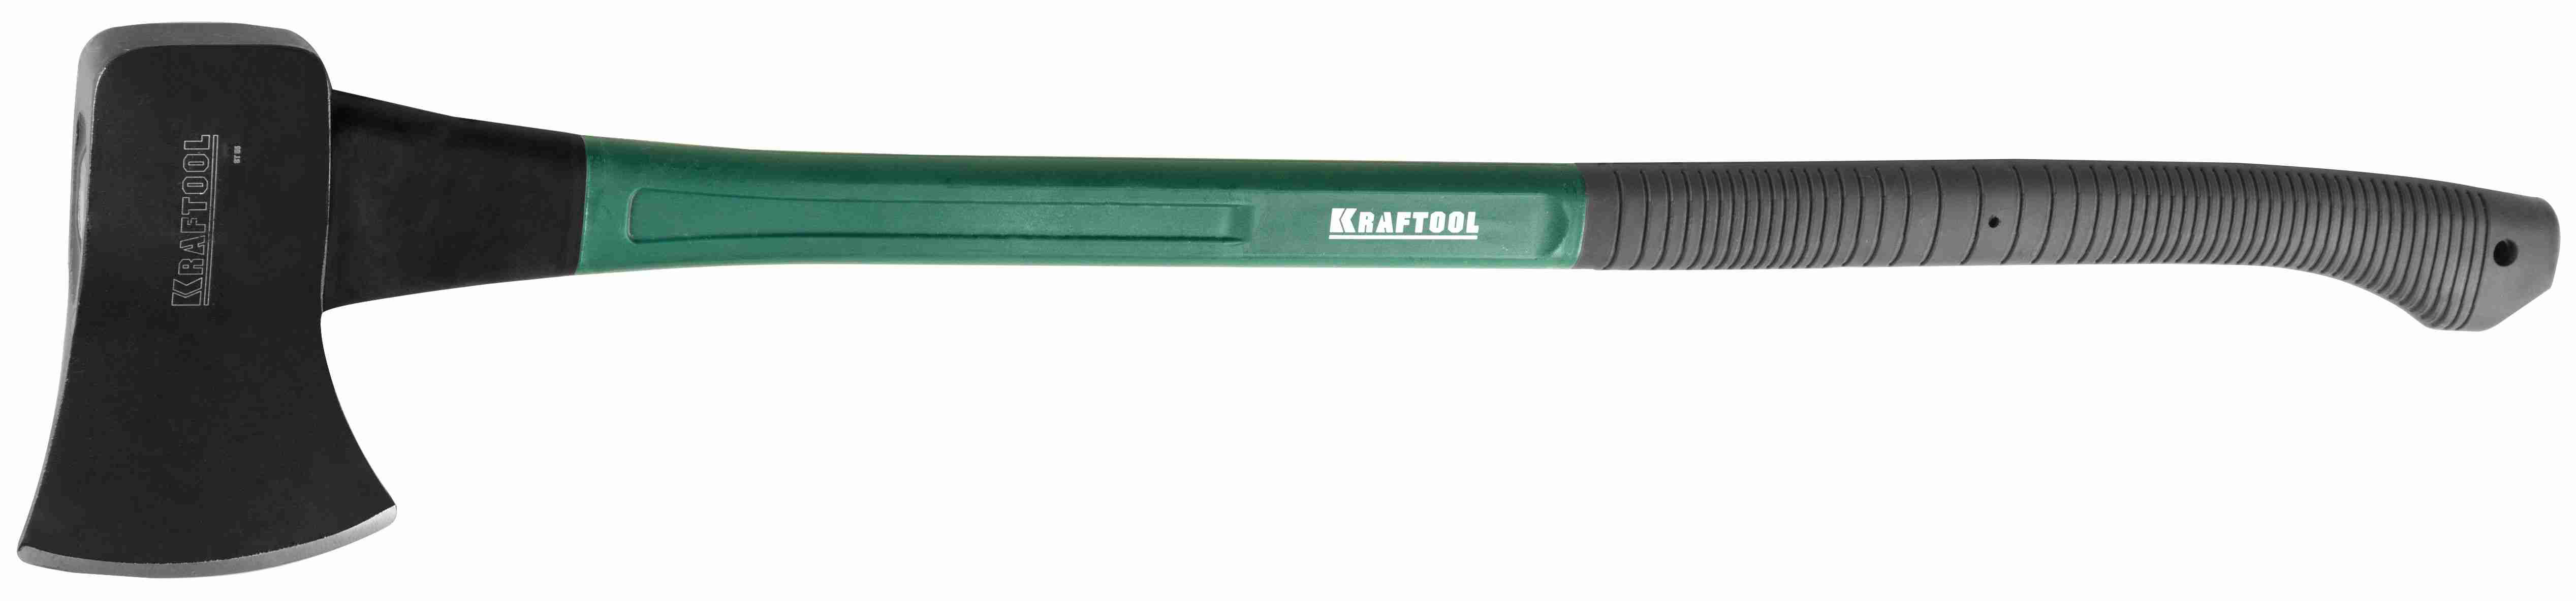 Универсальный топор 2 кг Kraftool EXPERT 20651-20 фото